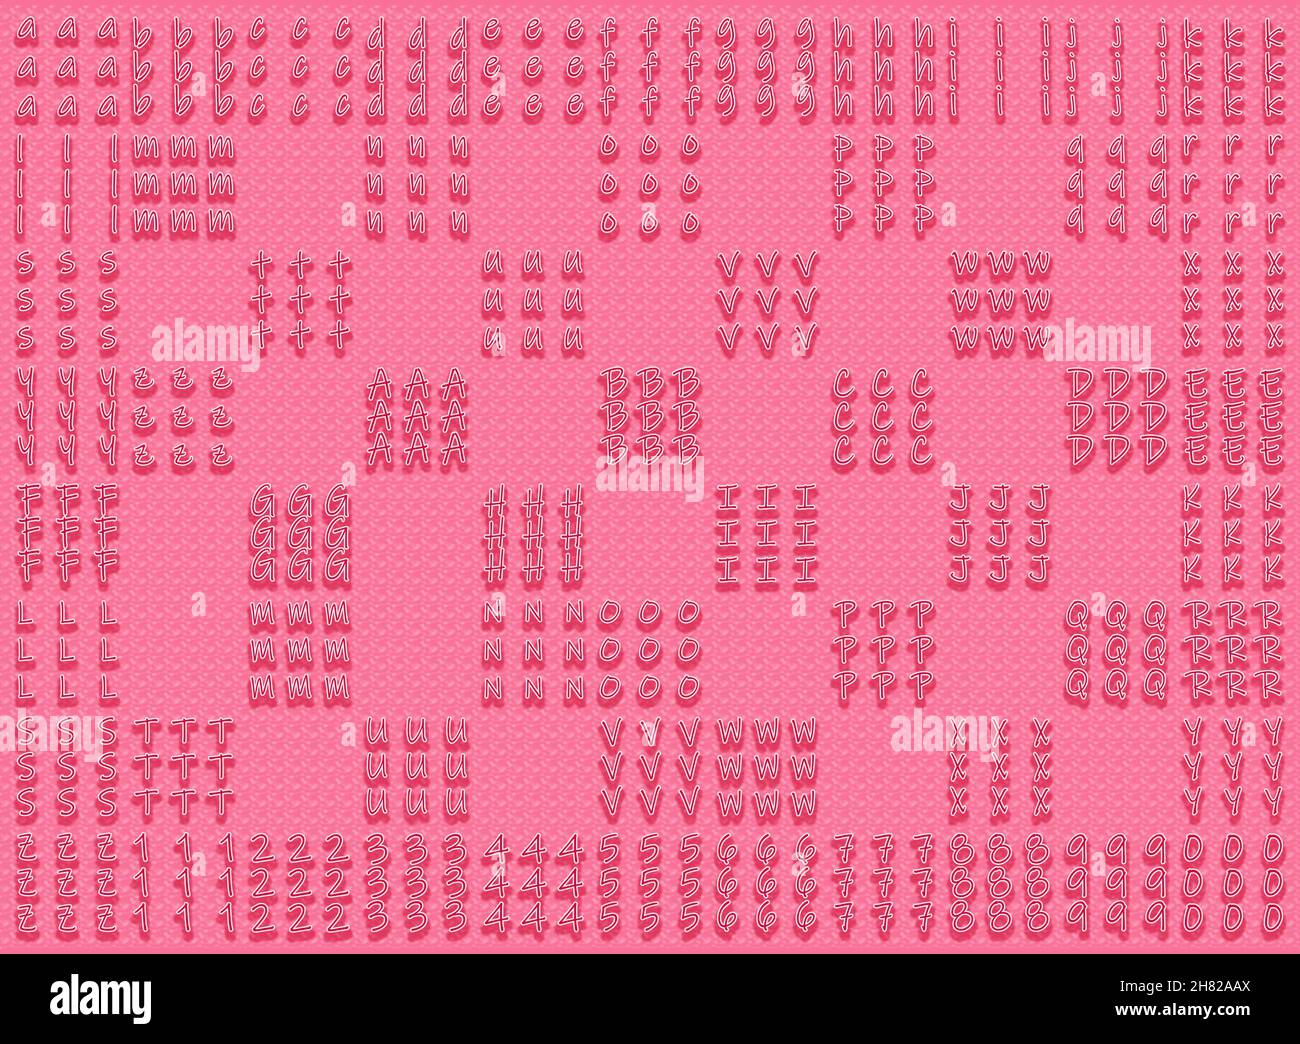 Un fond rose avec des lettres et des chiffres de calligraphie puérile en 3D Banque D'Images